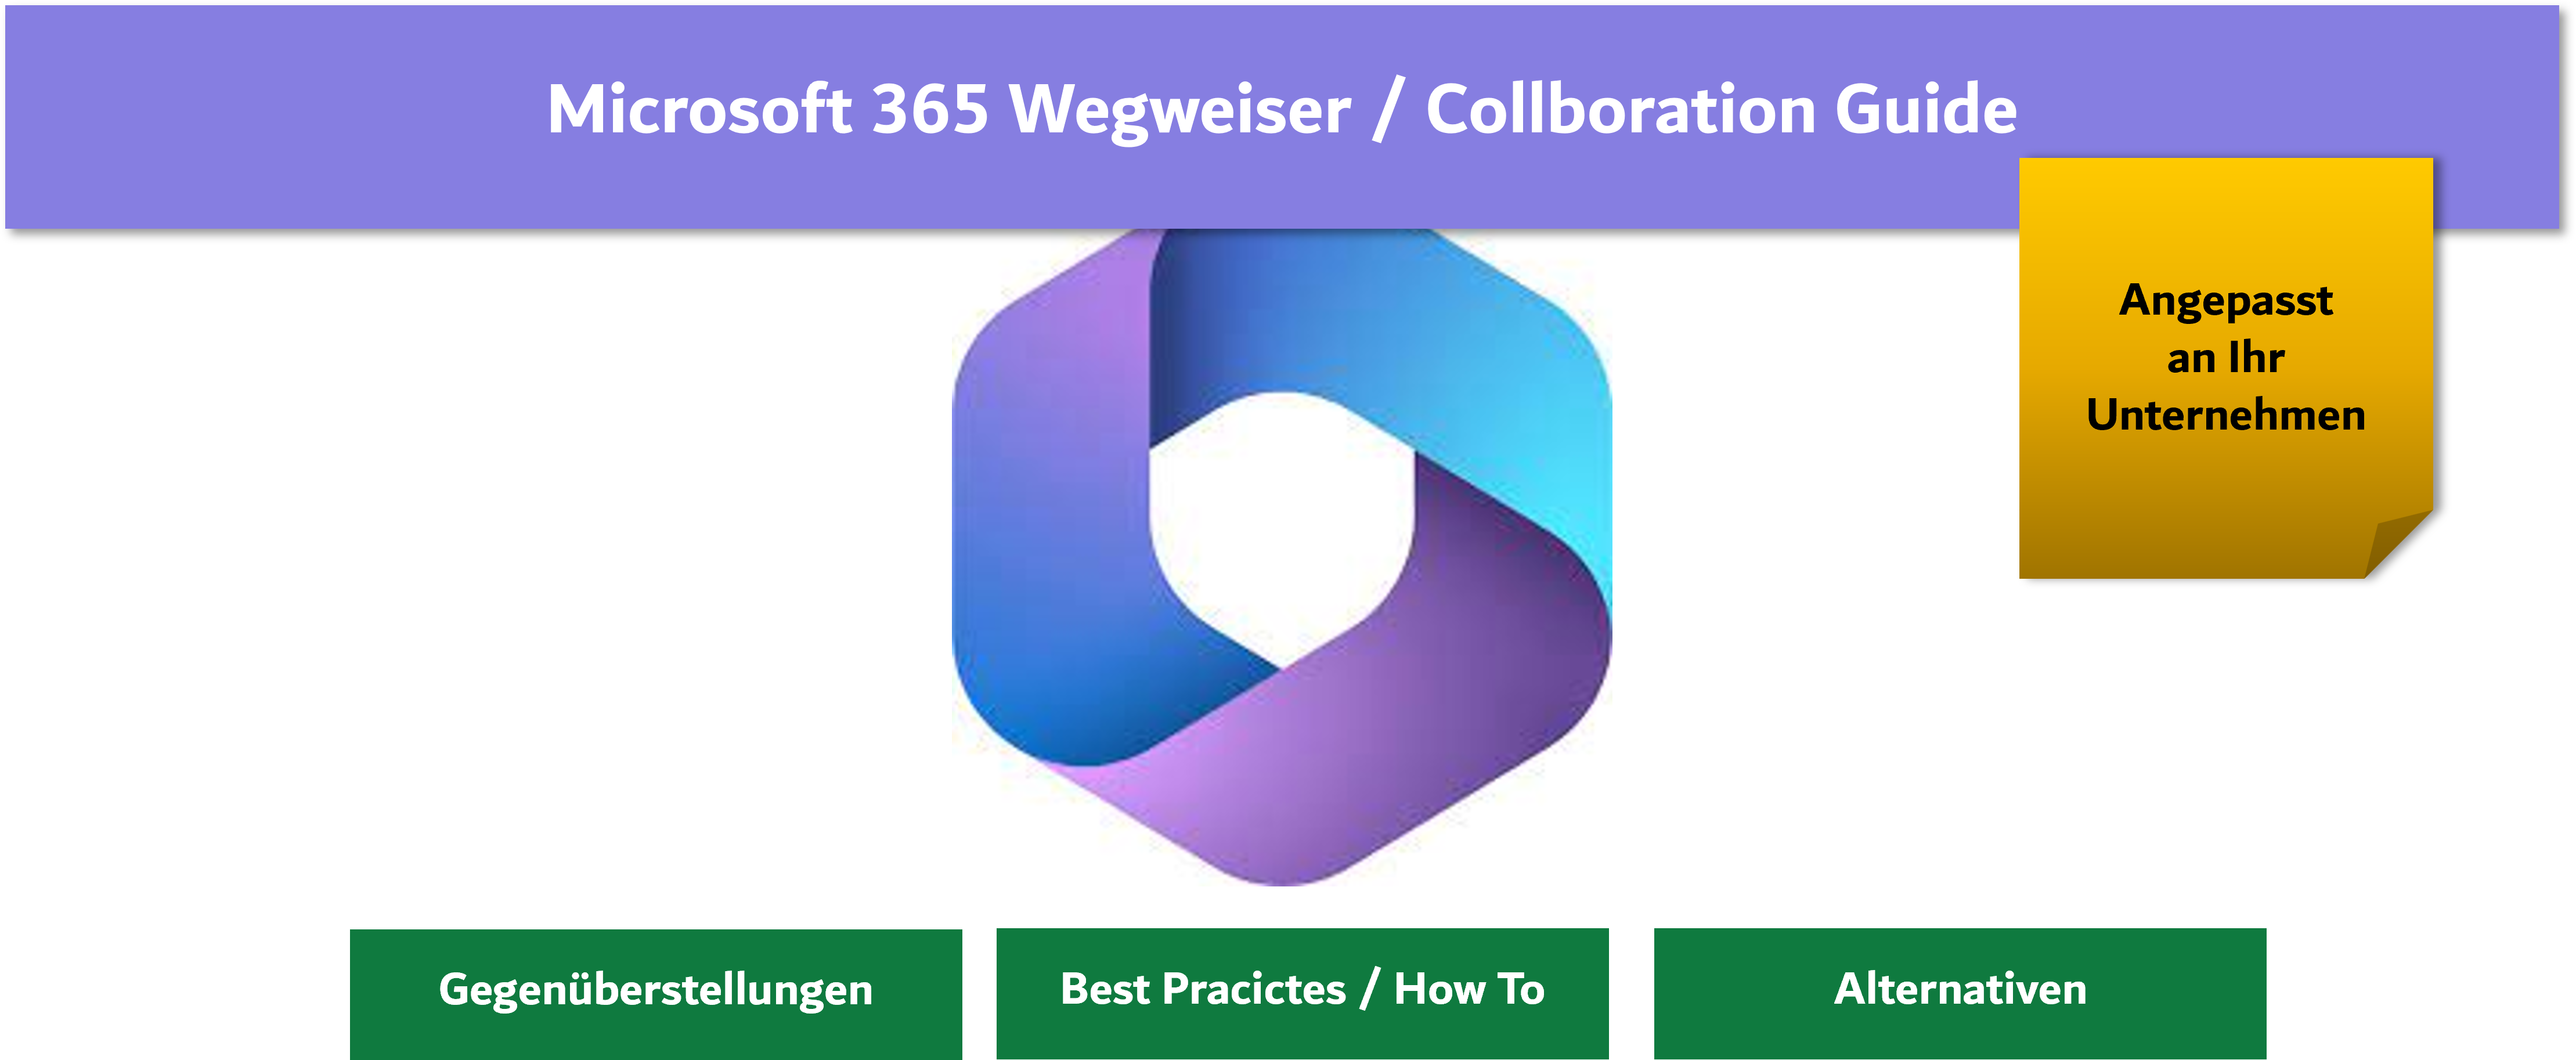 Microsoft 365 Wegweiser Collboration Guide